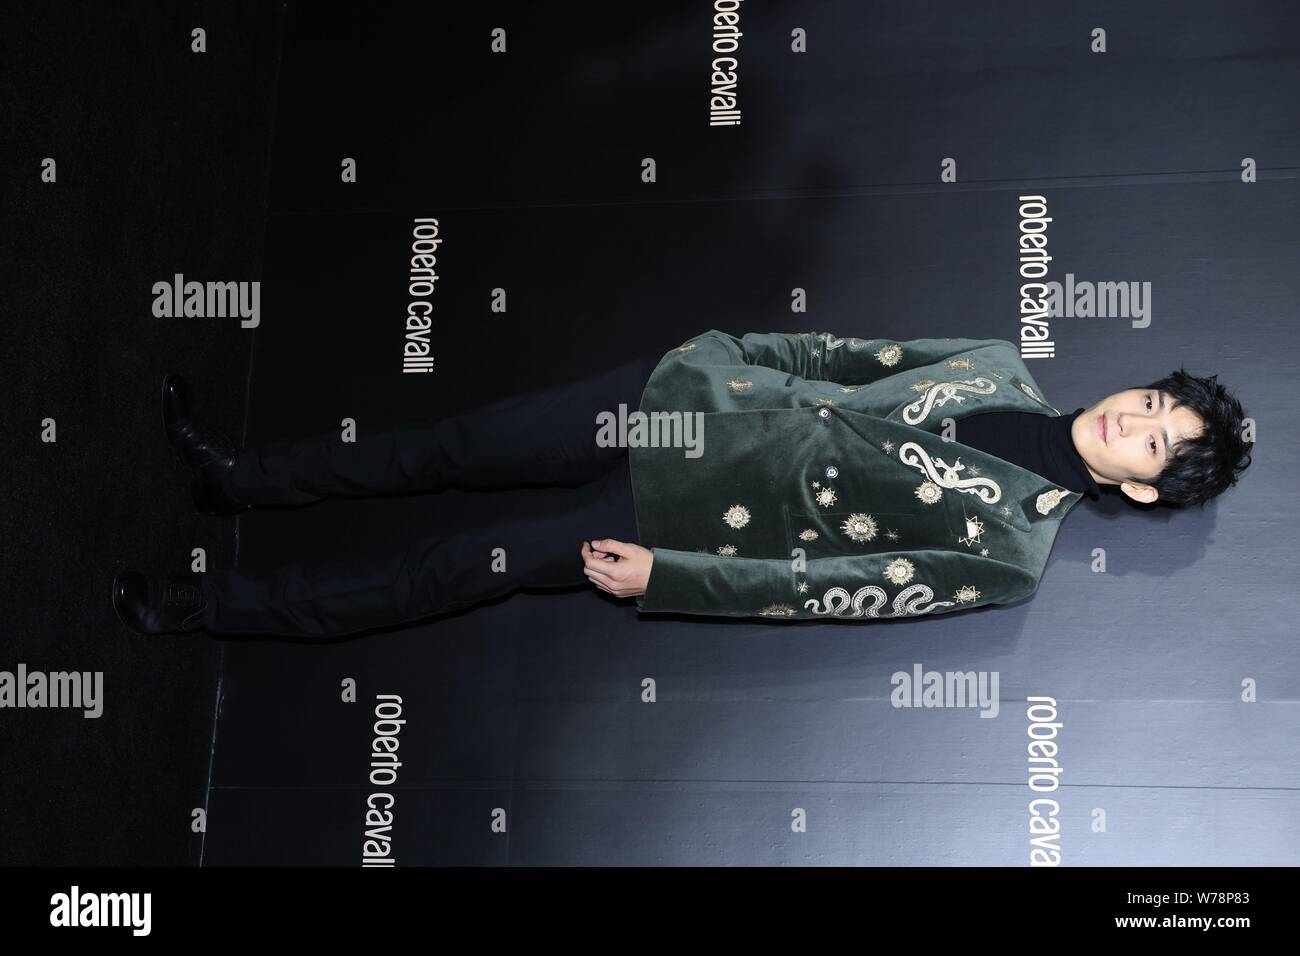 Chinesische Schauspieler Jing Boran besucht eine Werbeveranstaltung für Roberto Cavalli in Peking, China, 3. November 2017. Stockfoto